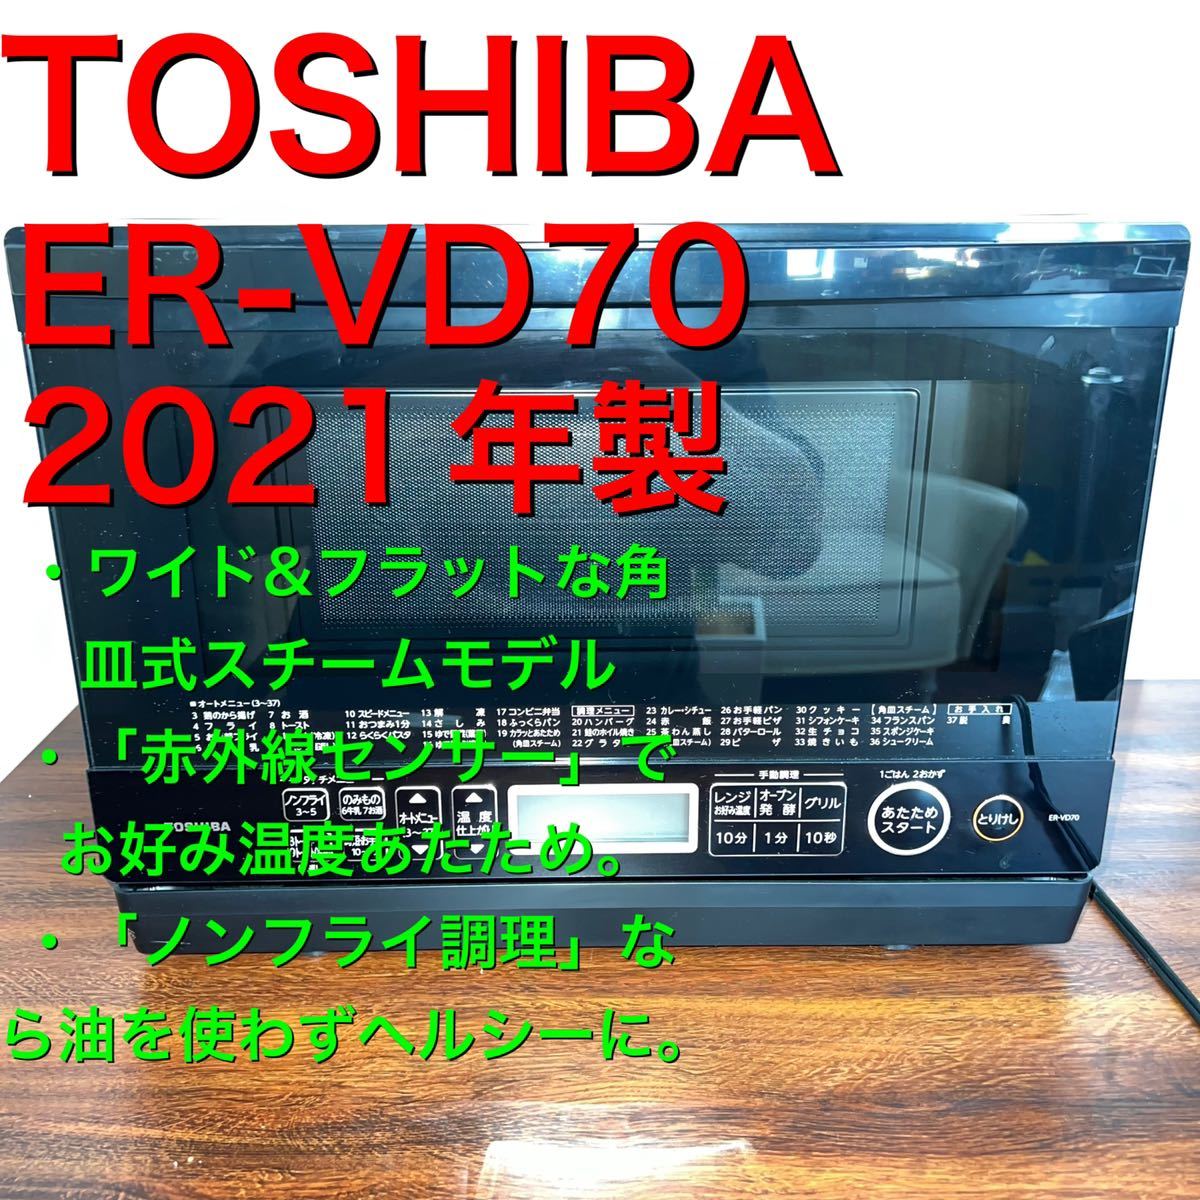 1円~【生活家電】TOSHIBA 東芝 石窯ドーム ER-VD70 2021年製 スチームオーブンレンジ グランブラック ワイドフラットな 角皿式スチーム